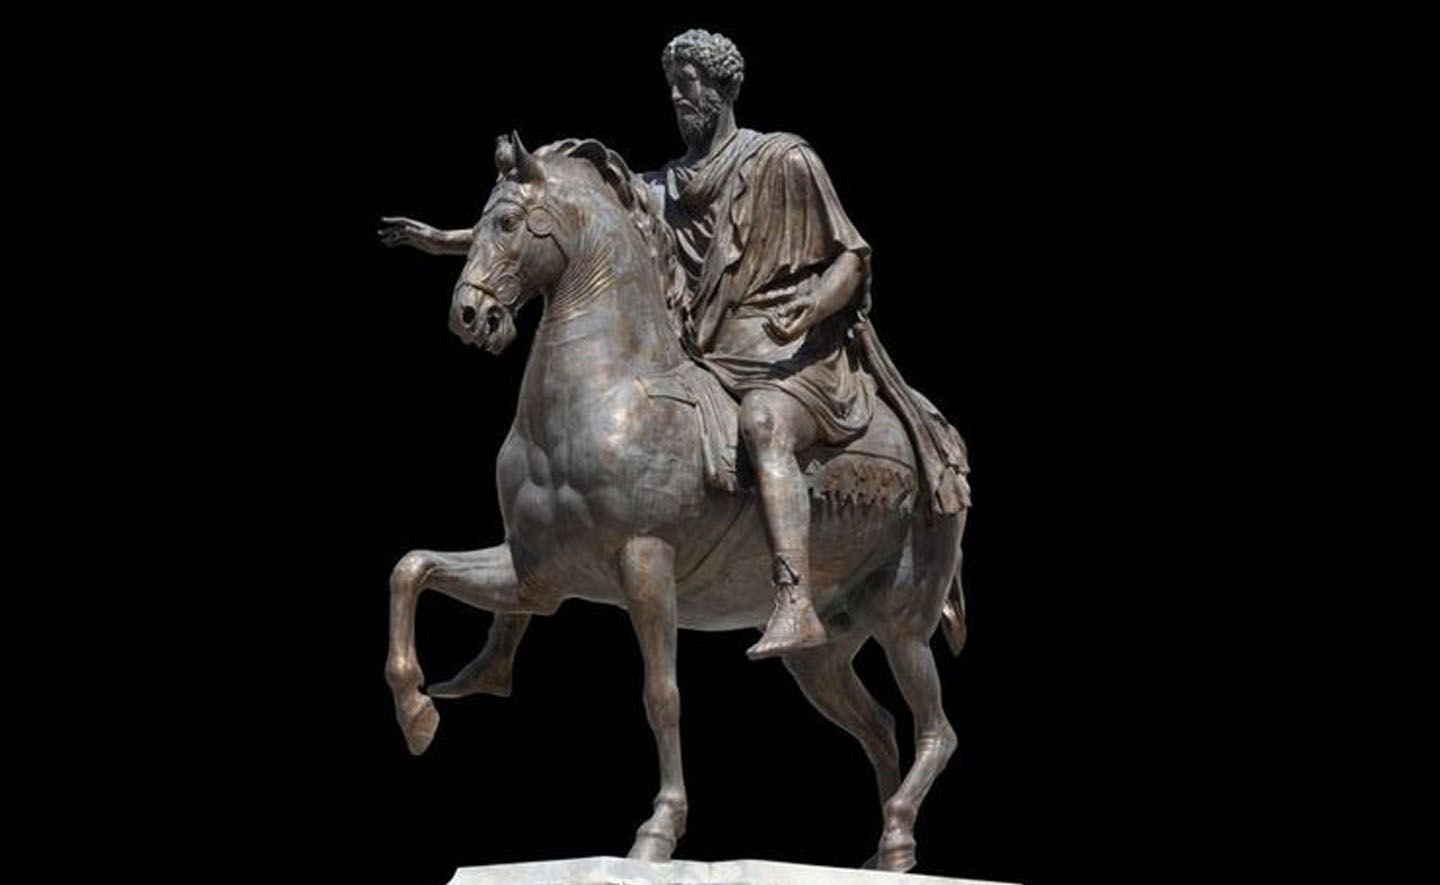 44 câu trích dẫn hay và quan trọng của Marcus Aurelius về ý nghĩa của việc sống một cuộc sống tốt đẹp